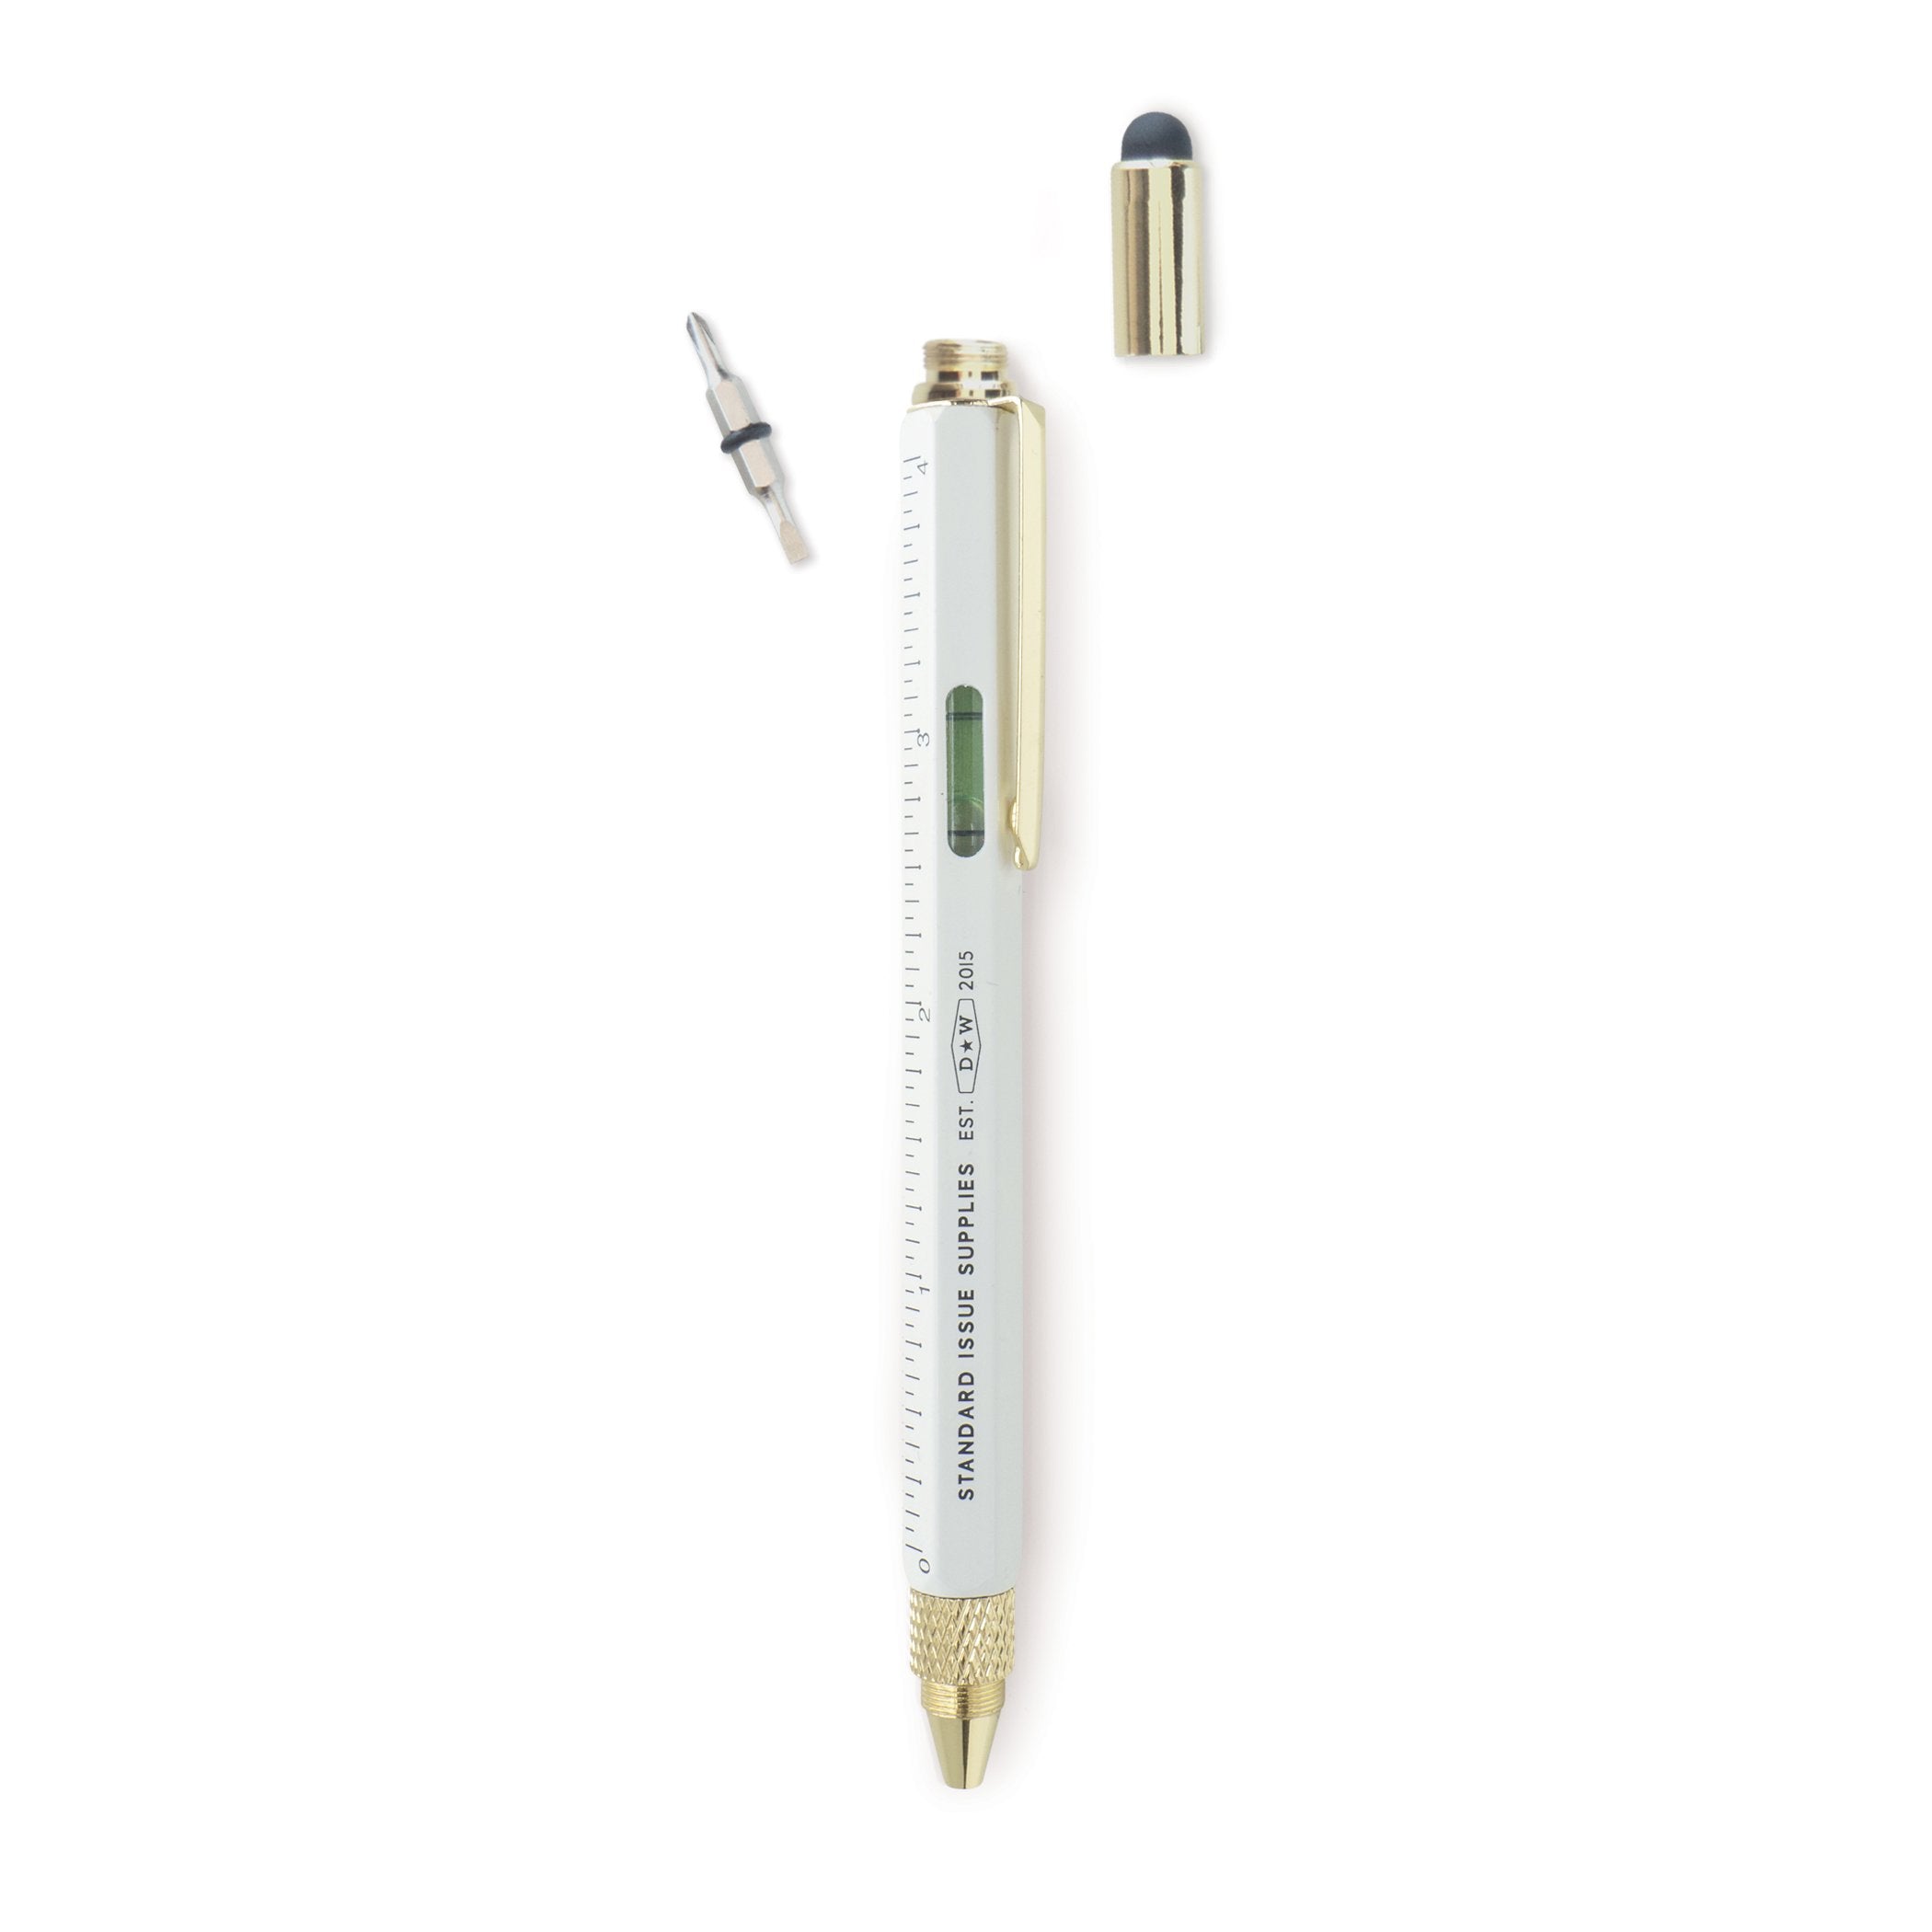 Pix Multi Tool - Standard Issue Tool Pen - Cream | DesignWorks Ink image3